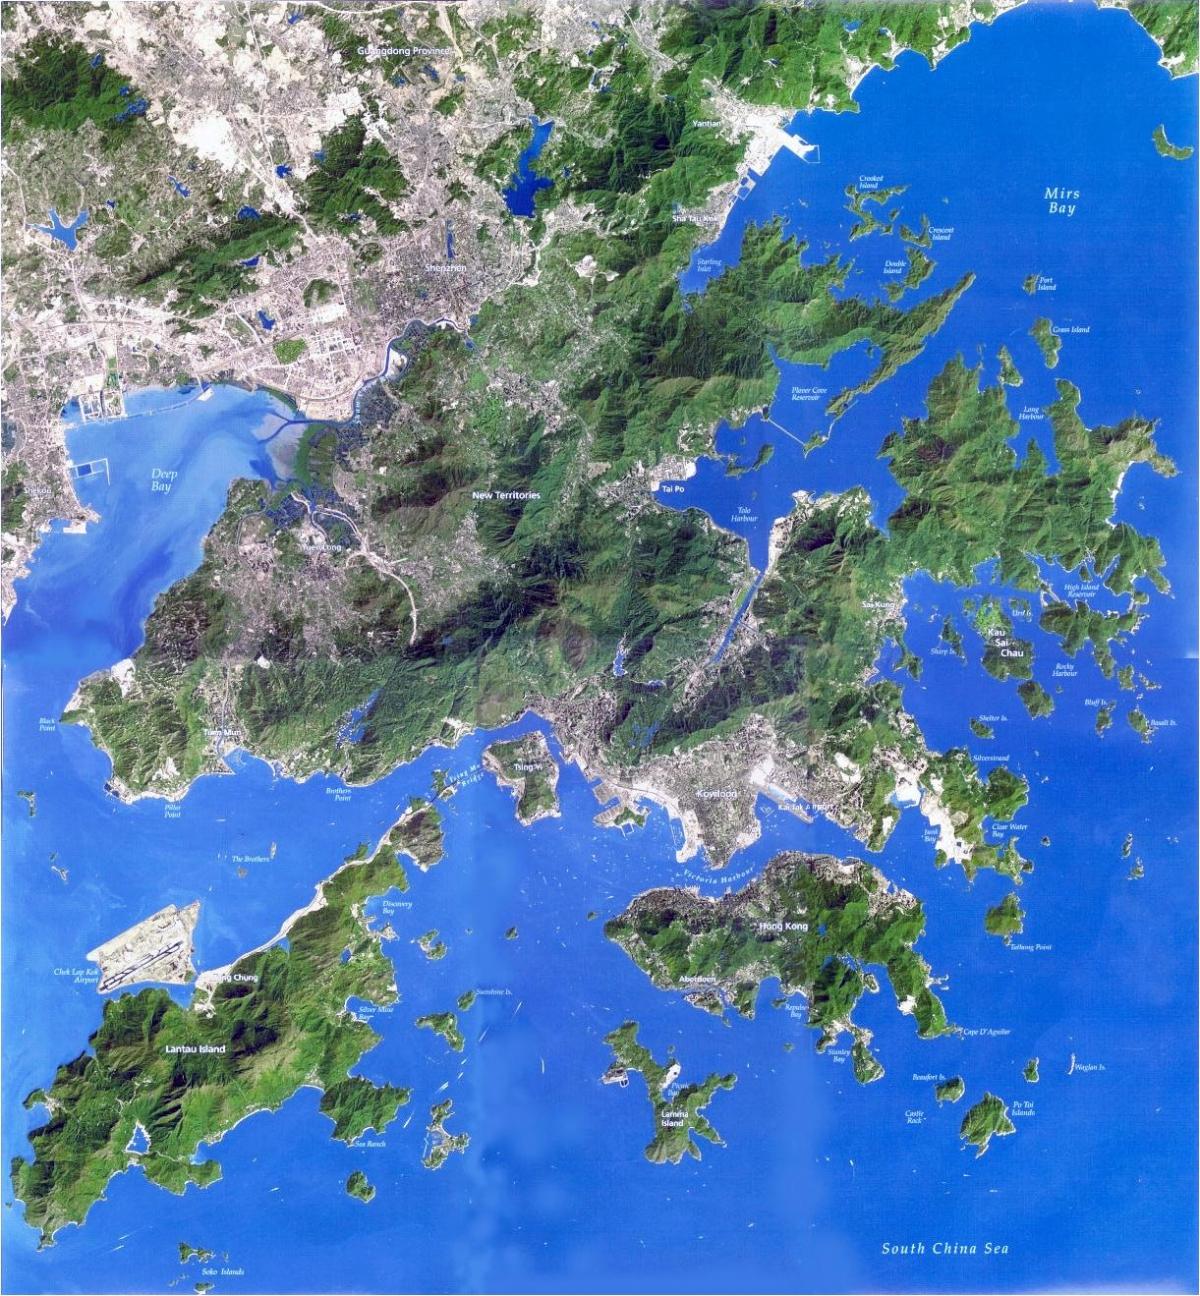 δορυφορικός χάρτης του Χονγκ Κονγκ